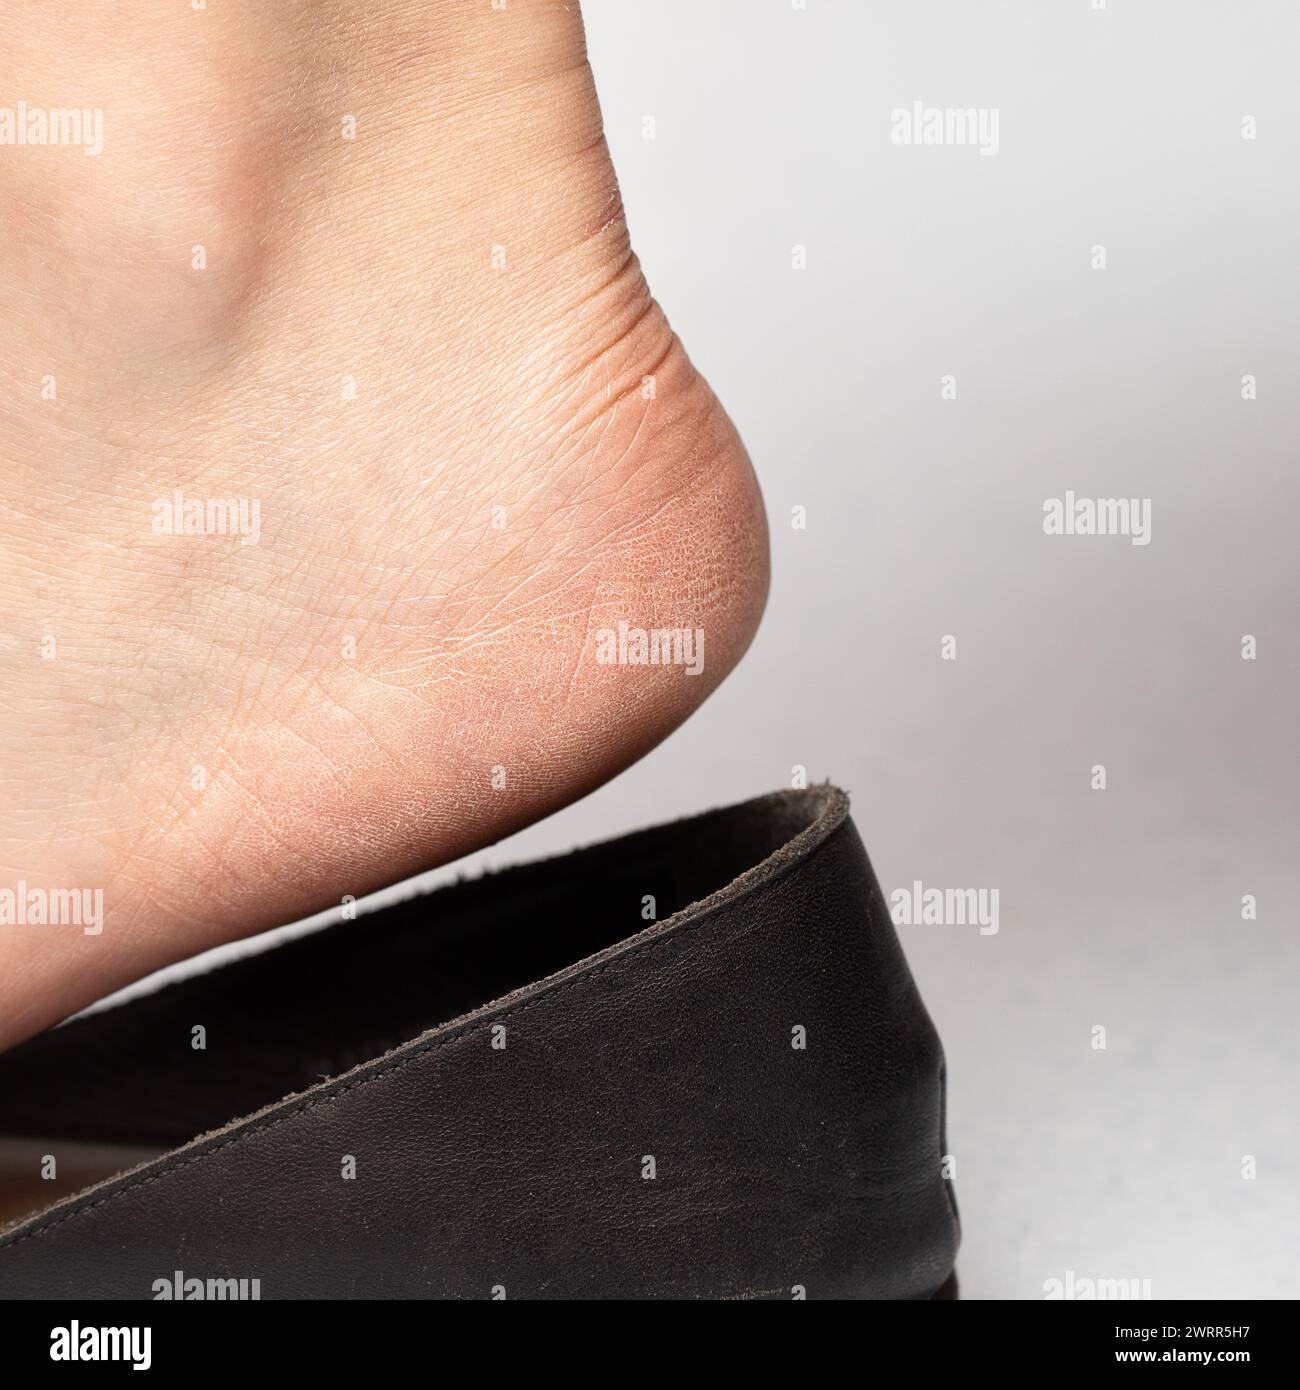 Immagine dettagliata di un piede con pelle asciutta e fessurata sul tallone che entra in una scarpa nera slip-on, evidenziando la necessità di idratazione del piede Foto Stock